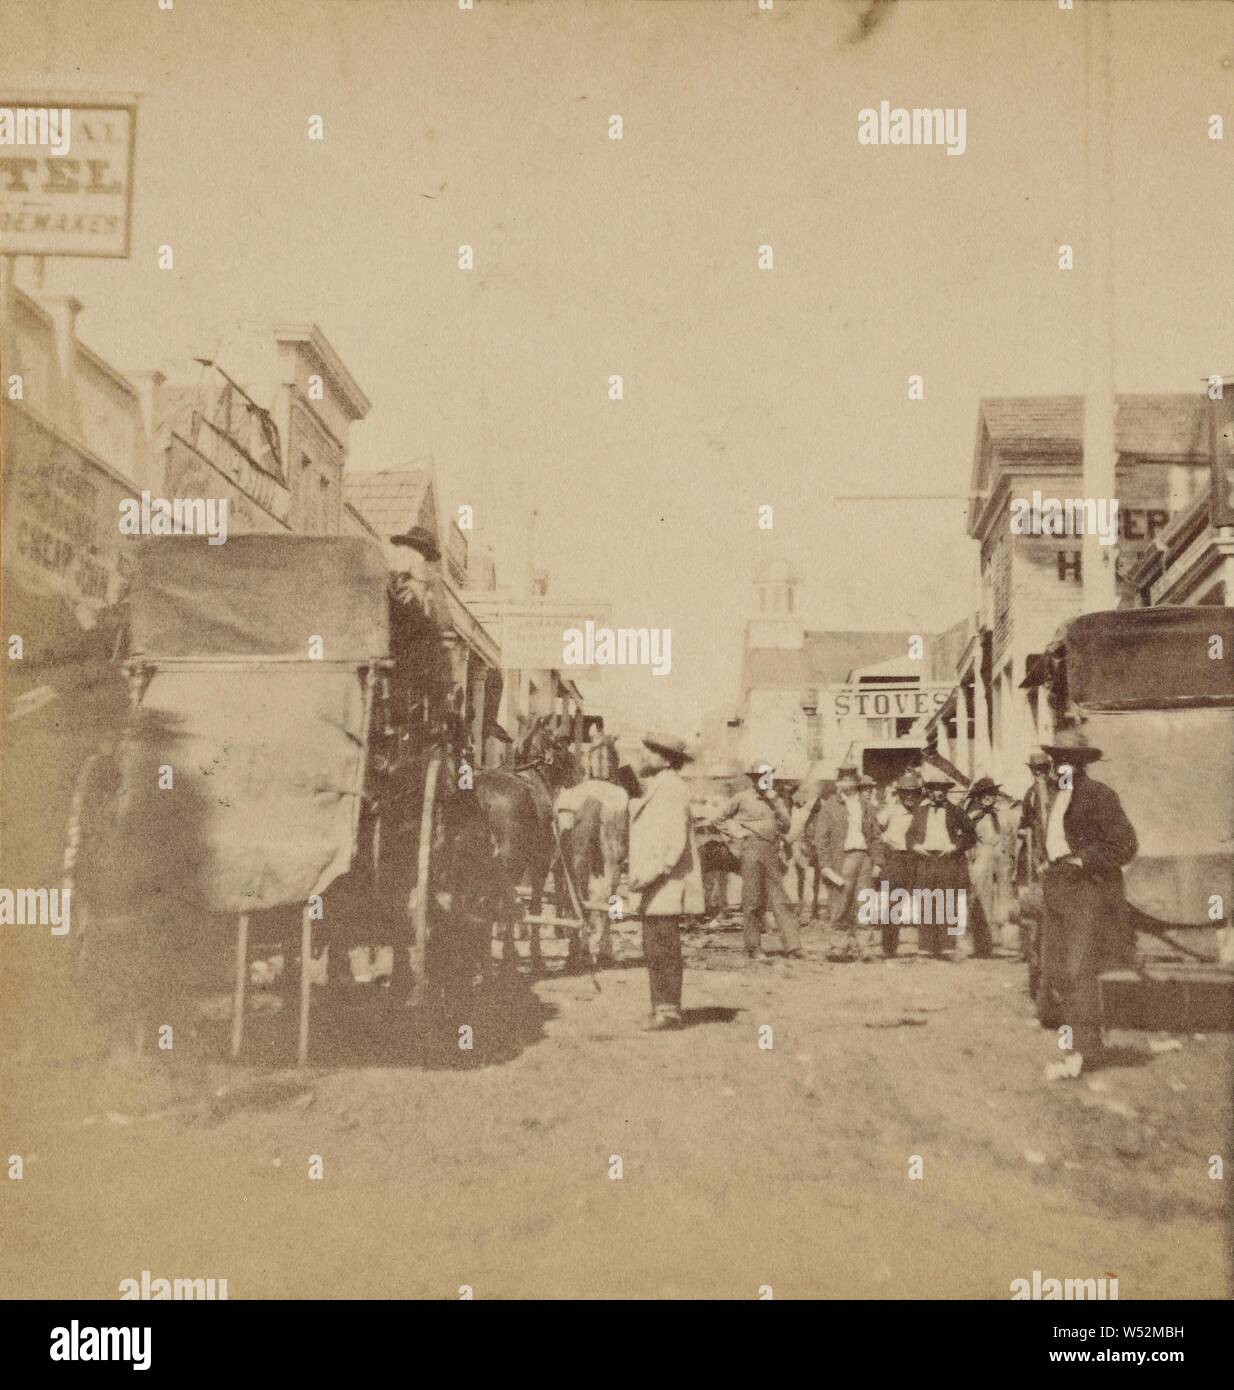 Main Street, télévision néerlandaise, placer Comté., Thomas Houseworth & Company, 1868, à l'albumine argentique Banque D'Images